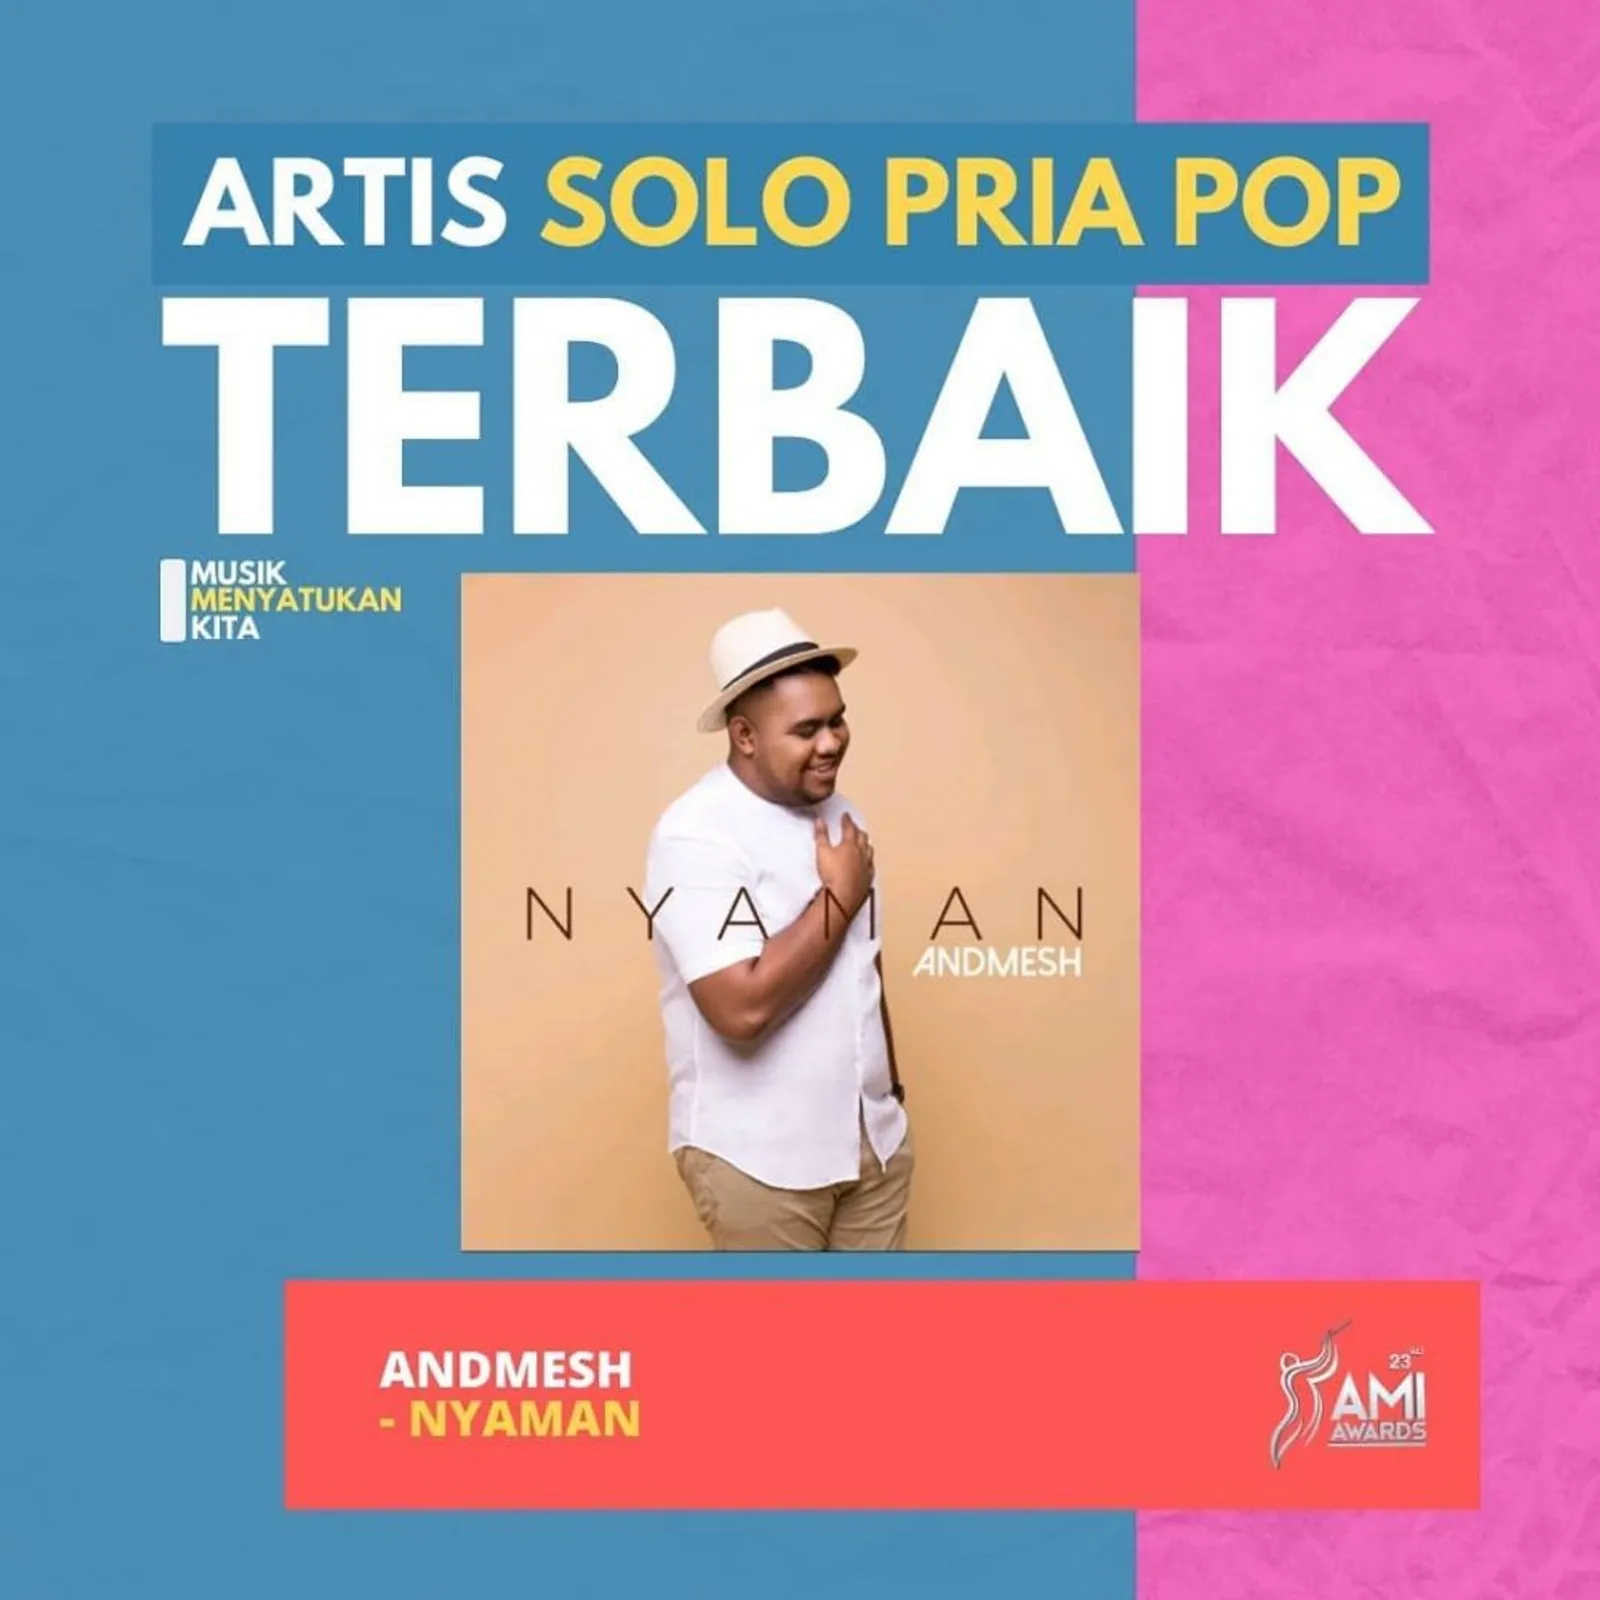 Karya Musik Terbaik Indonesia, Daftar Lengkap Pemenang AMI Awards 2020